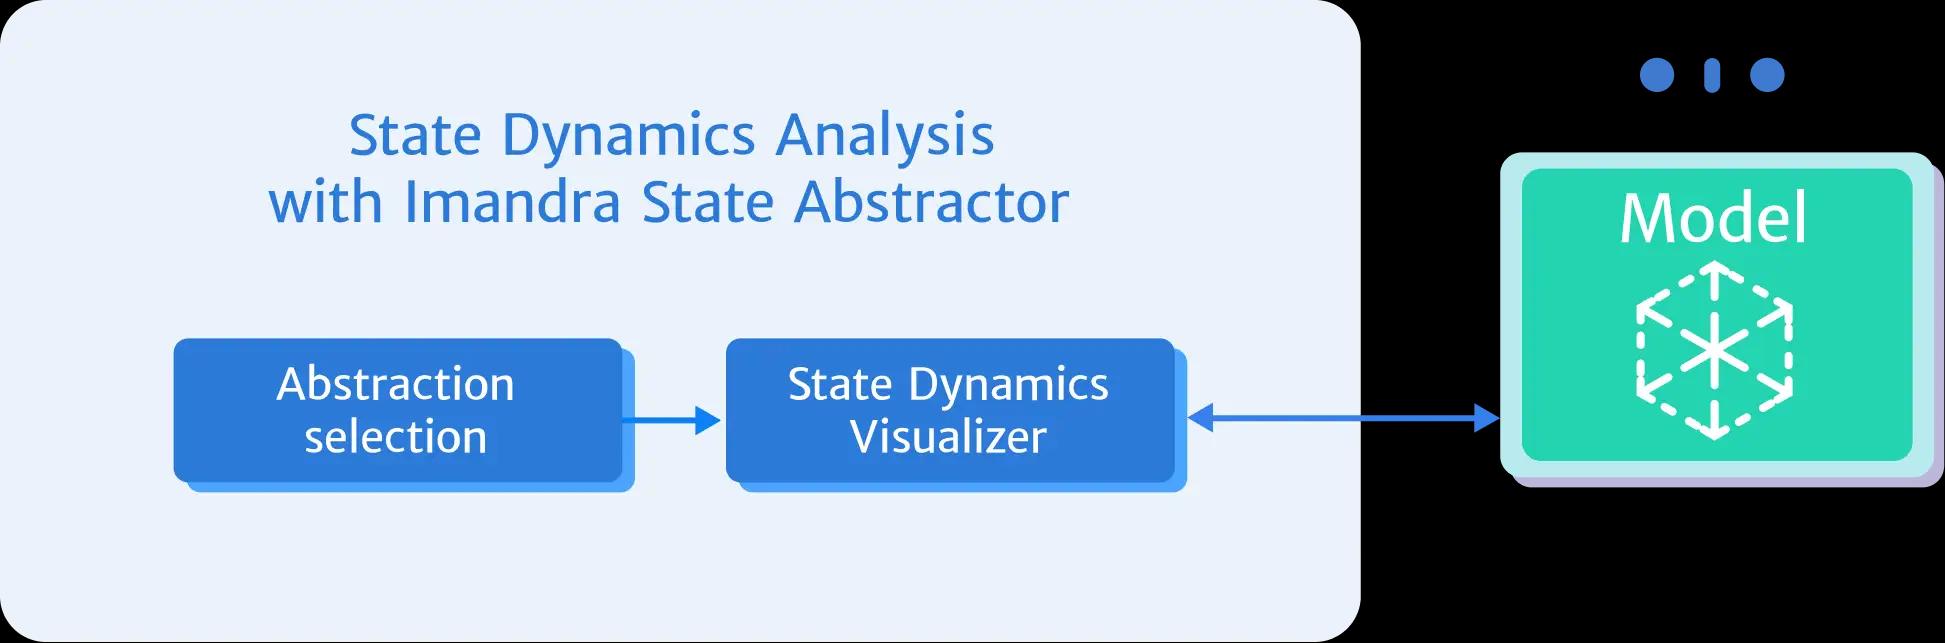 State Dynamics Analysis